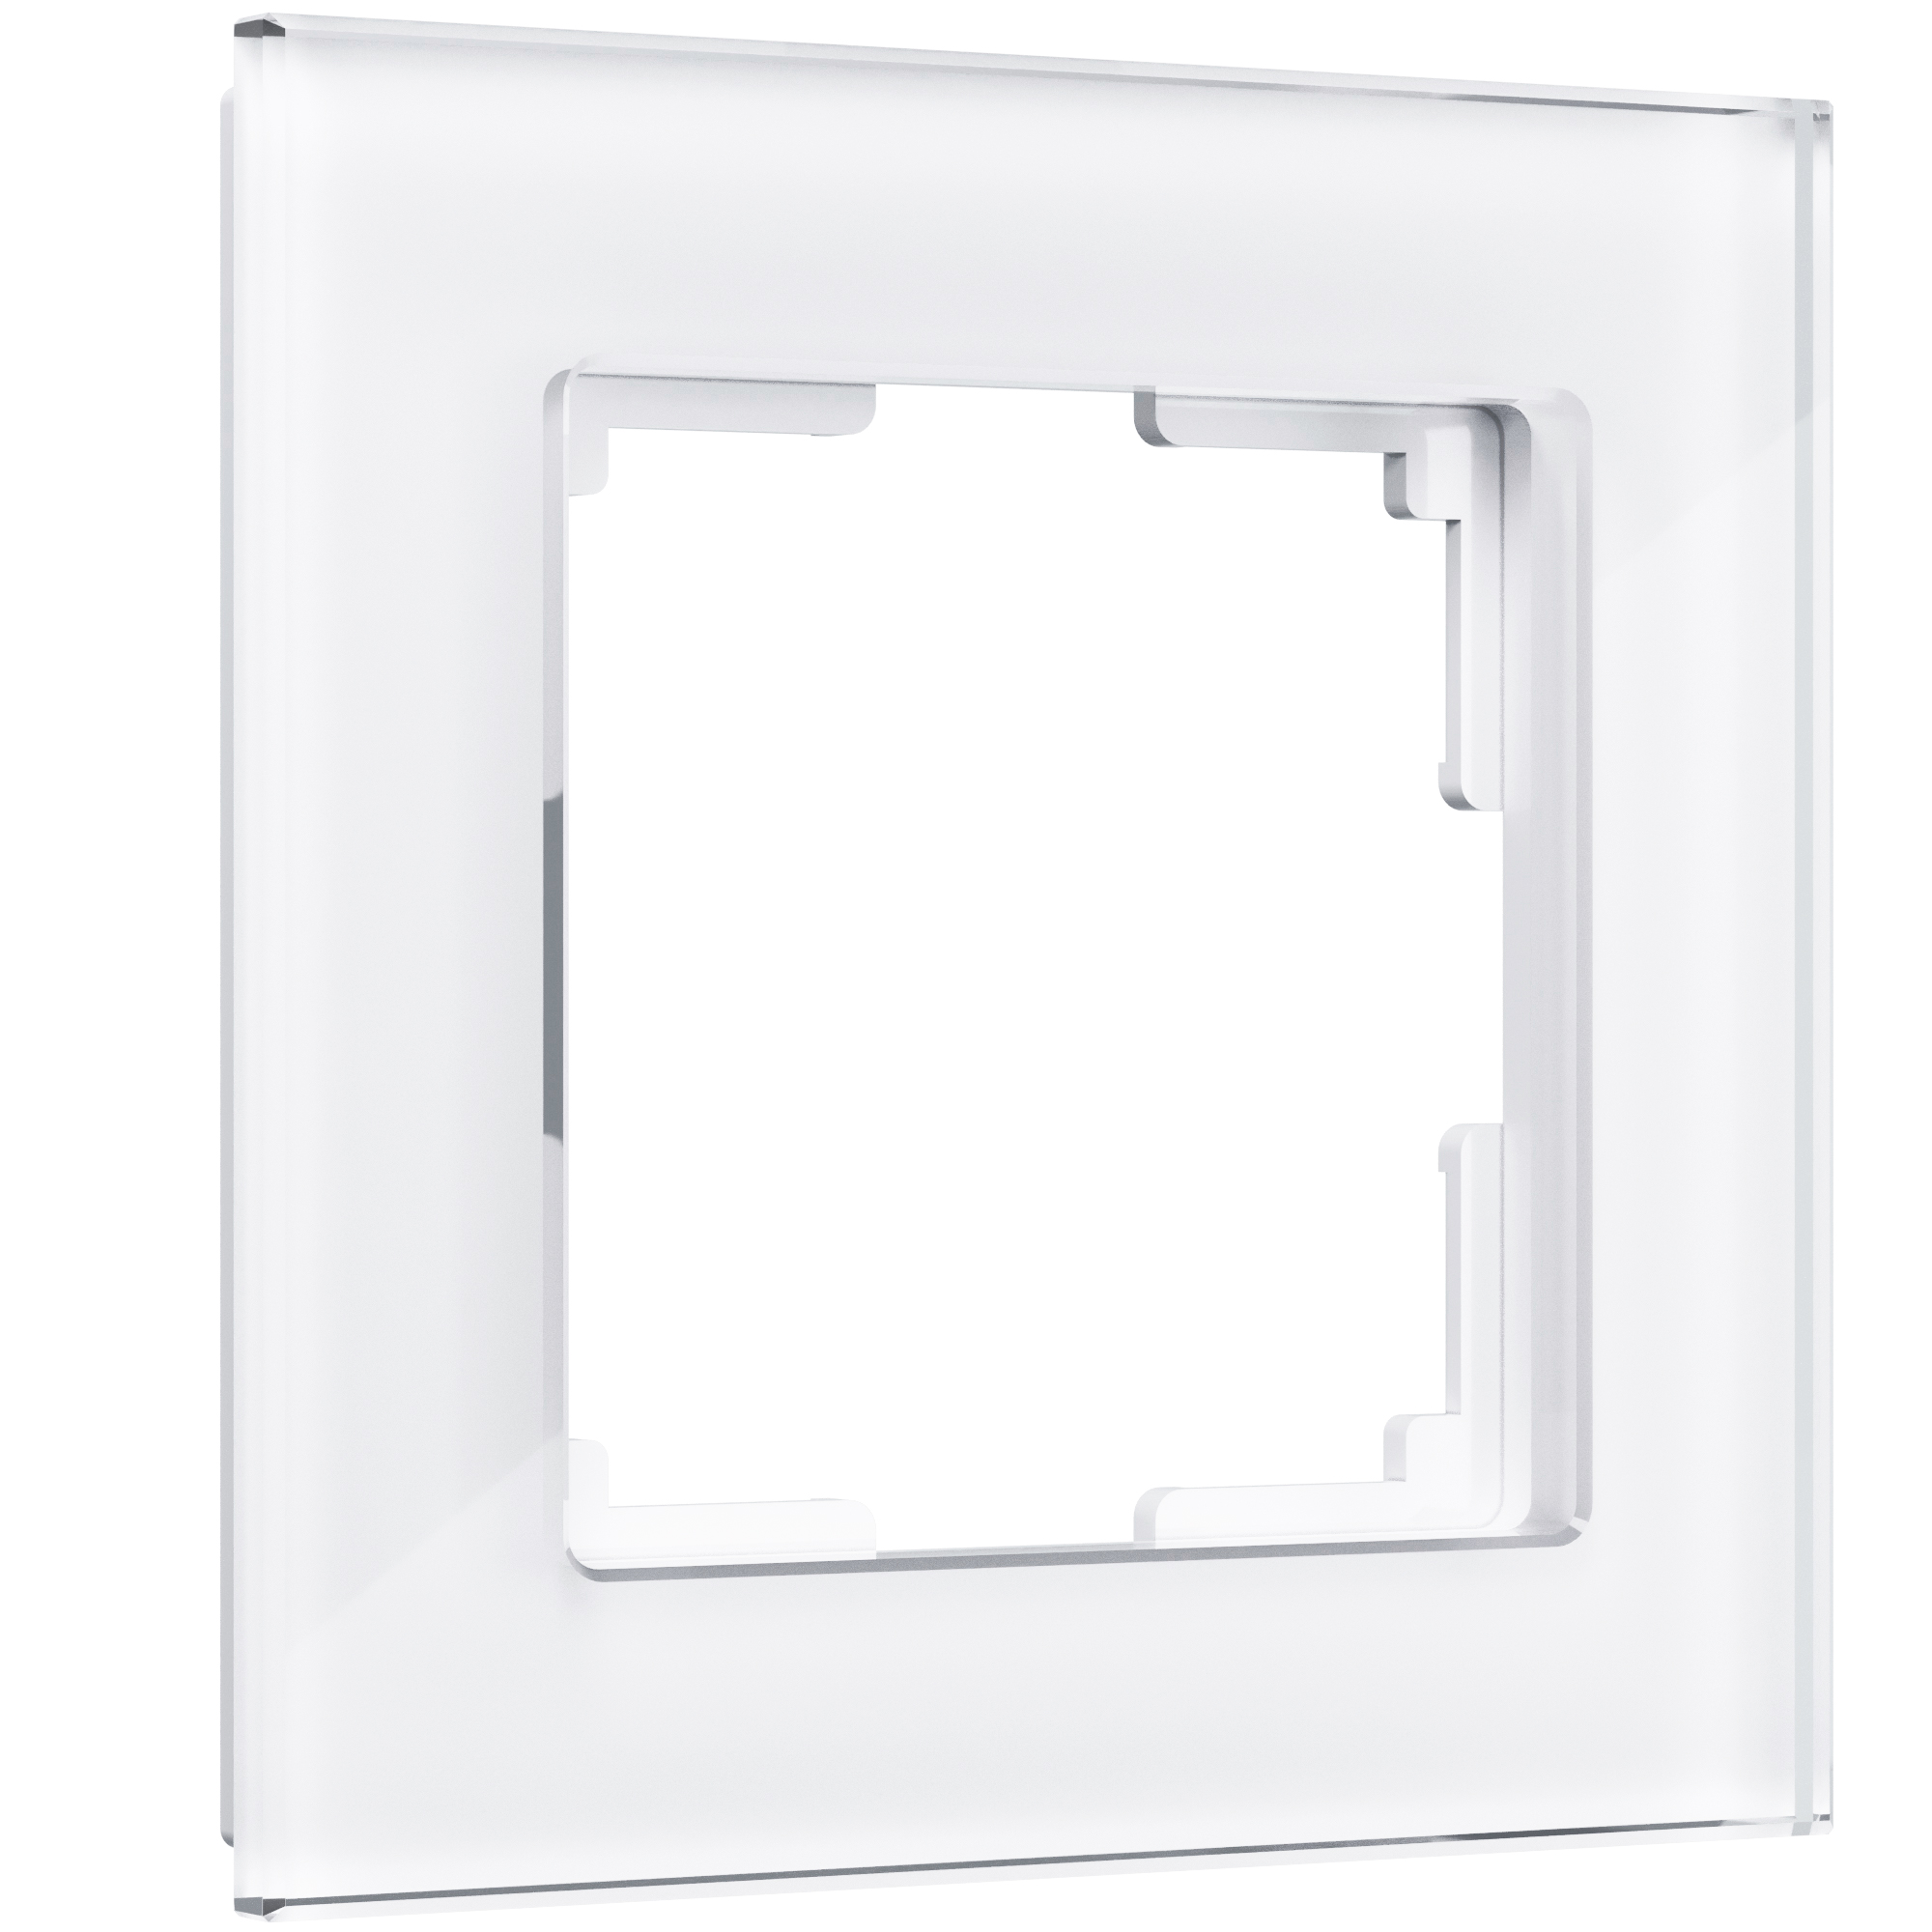 Рамка для розетки / выключателя на 1 пост Werkel W0011101 Favorit белый стекло рамка на 1 пост werkel favorit w0011118 4690389159541